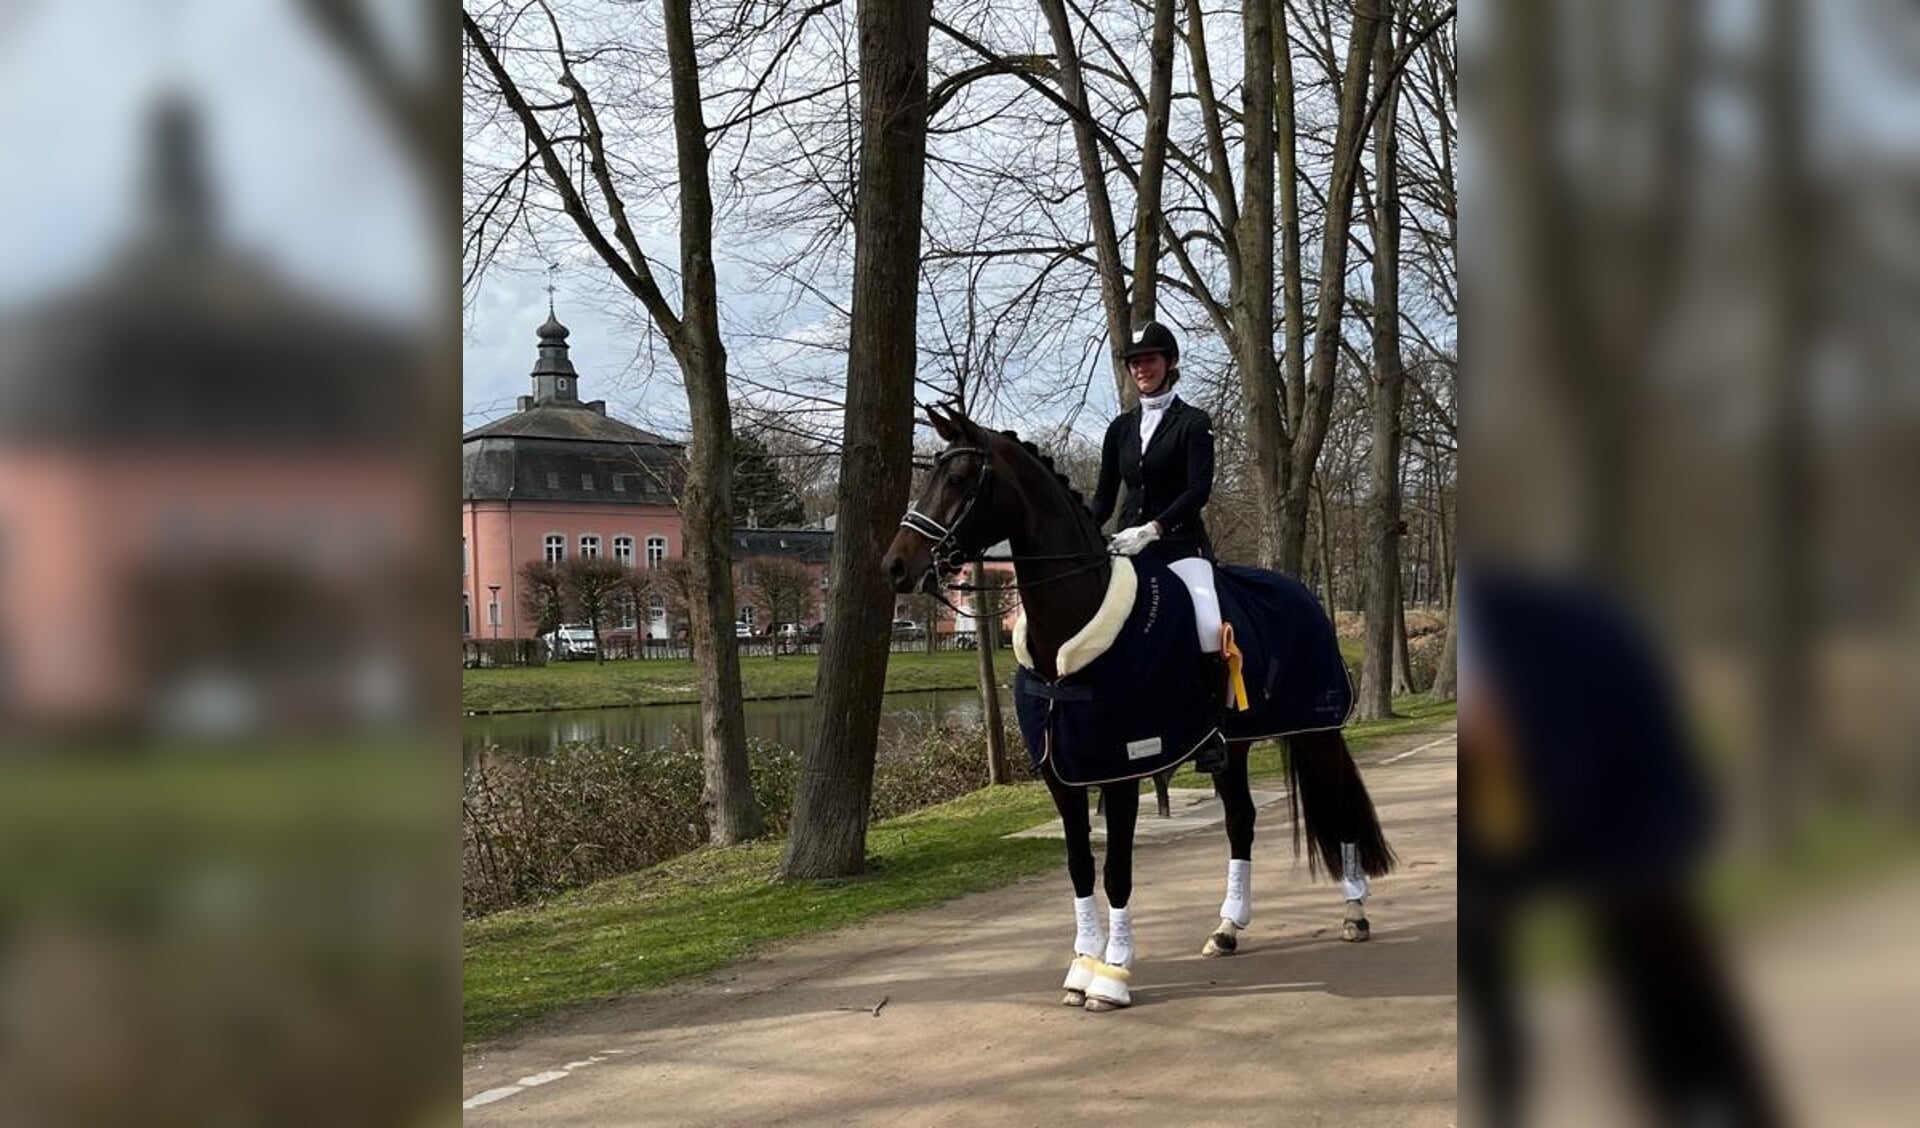 Druipend persoonlijkheid lavendel Subtop l Sanne Paulissen naar goede resultaten op tweede ZZZ-wedstrijd:  “Heel gaaf dat een goede proef beloond wordt” | Het onafhankelijke  paarden(sport)medium